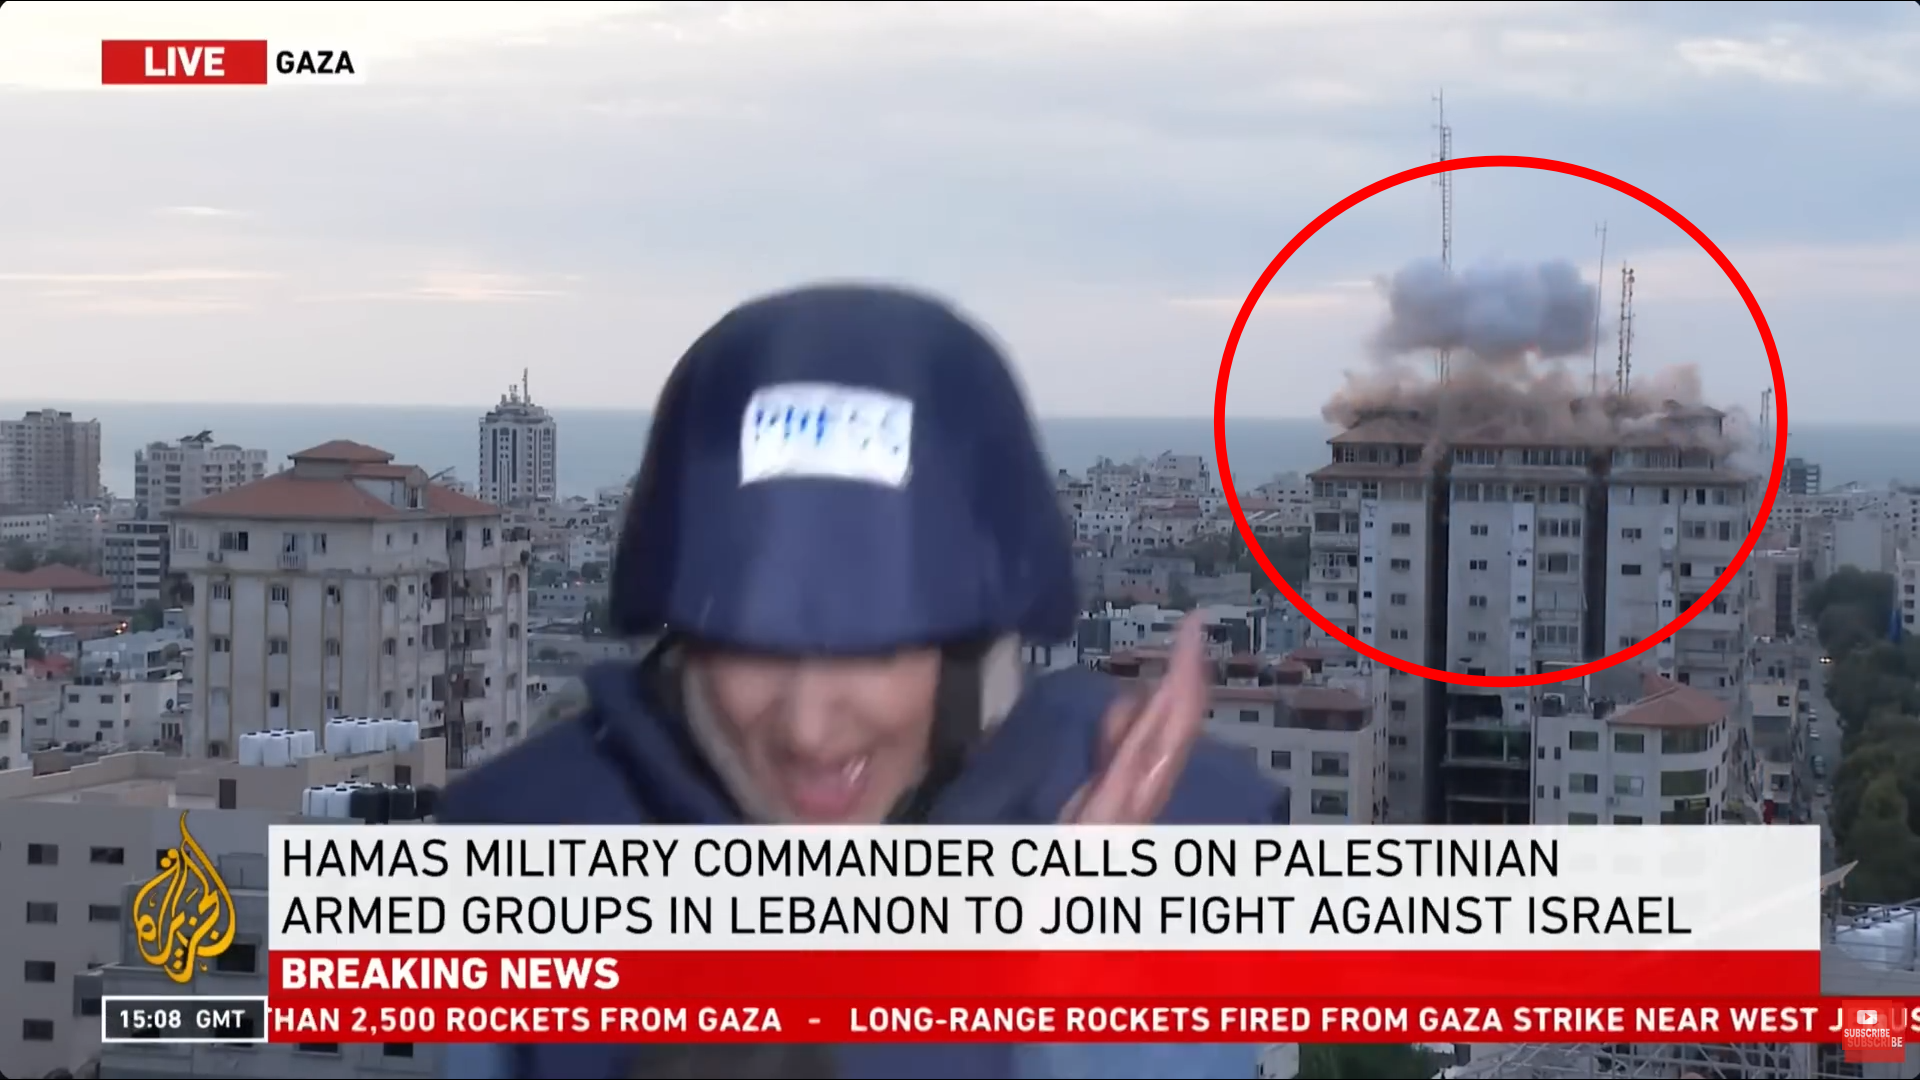 8일(현지시간) 중동 매체 알자지라가 가자지구의 상황을 생방송으로 전하던 도중 이스라엘의 공습 장면이 그대로 송출됐다. 유튜브 Al Jazeera English